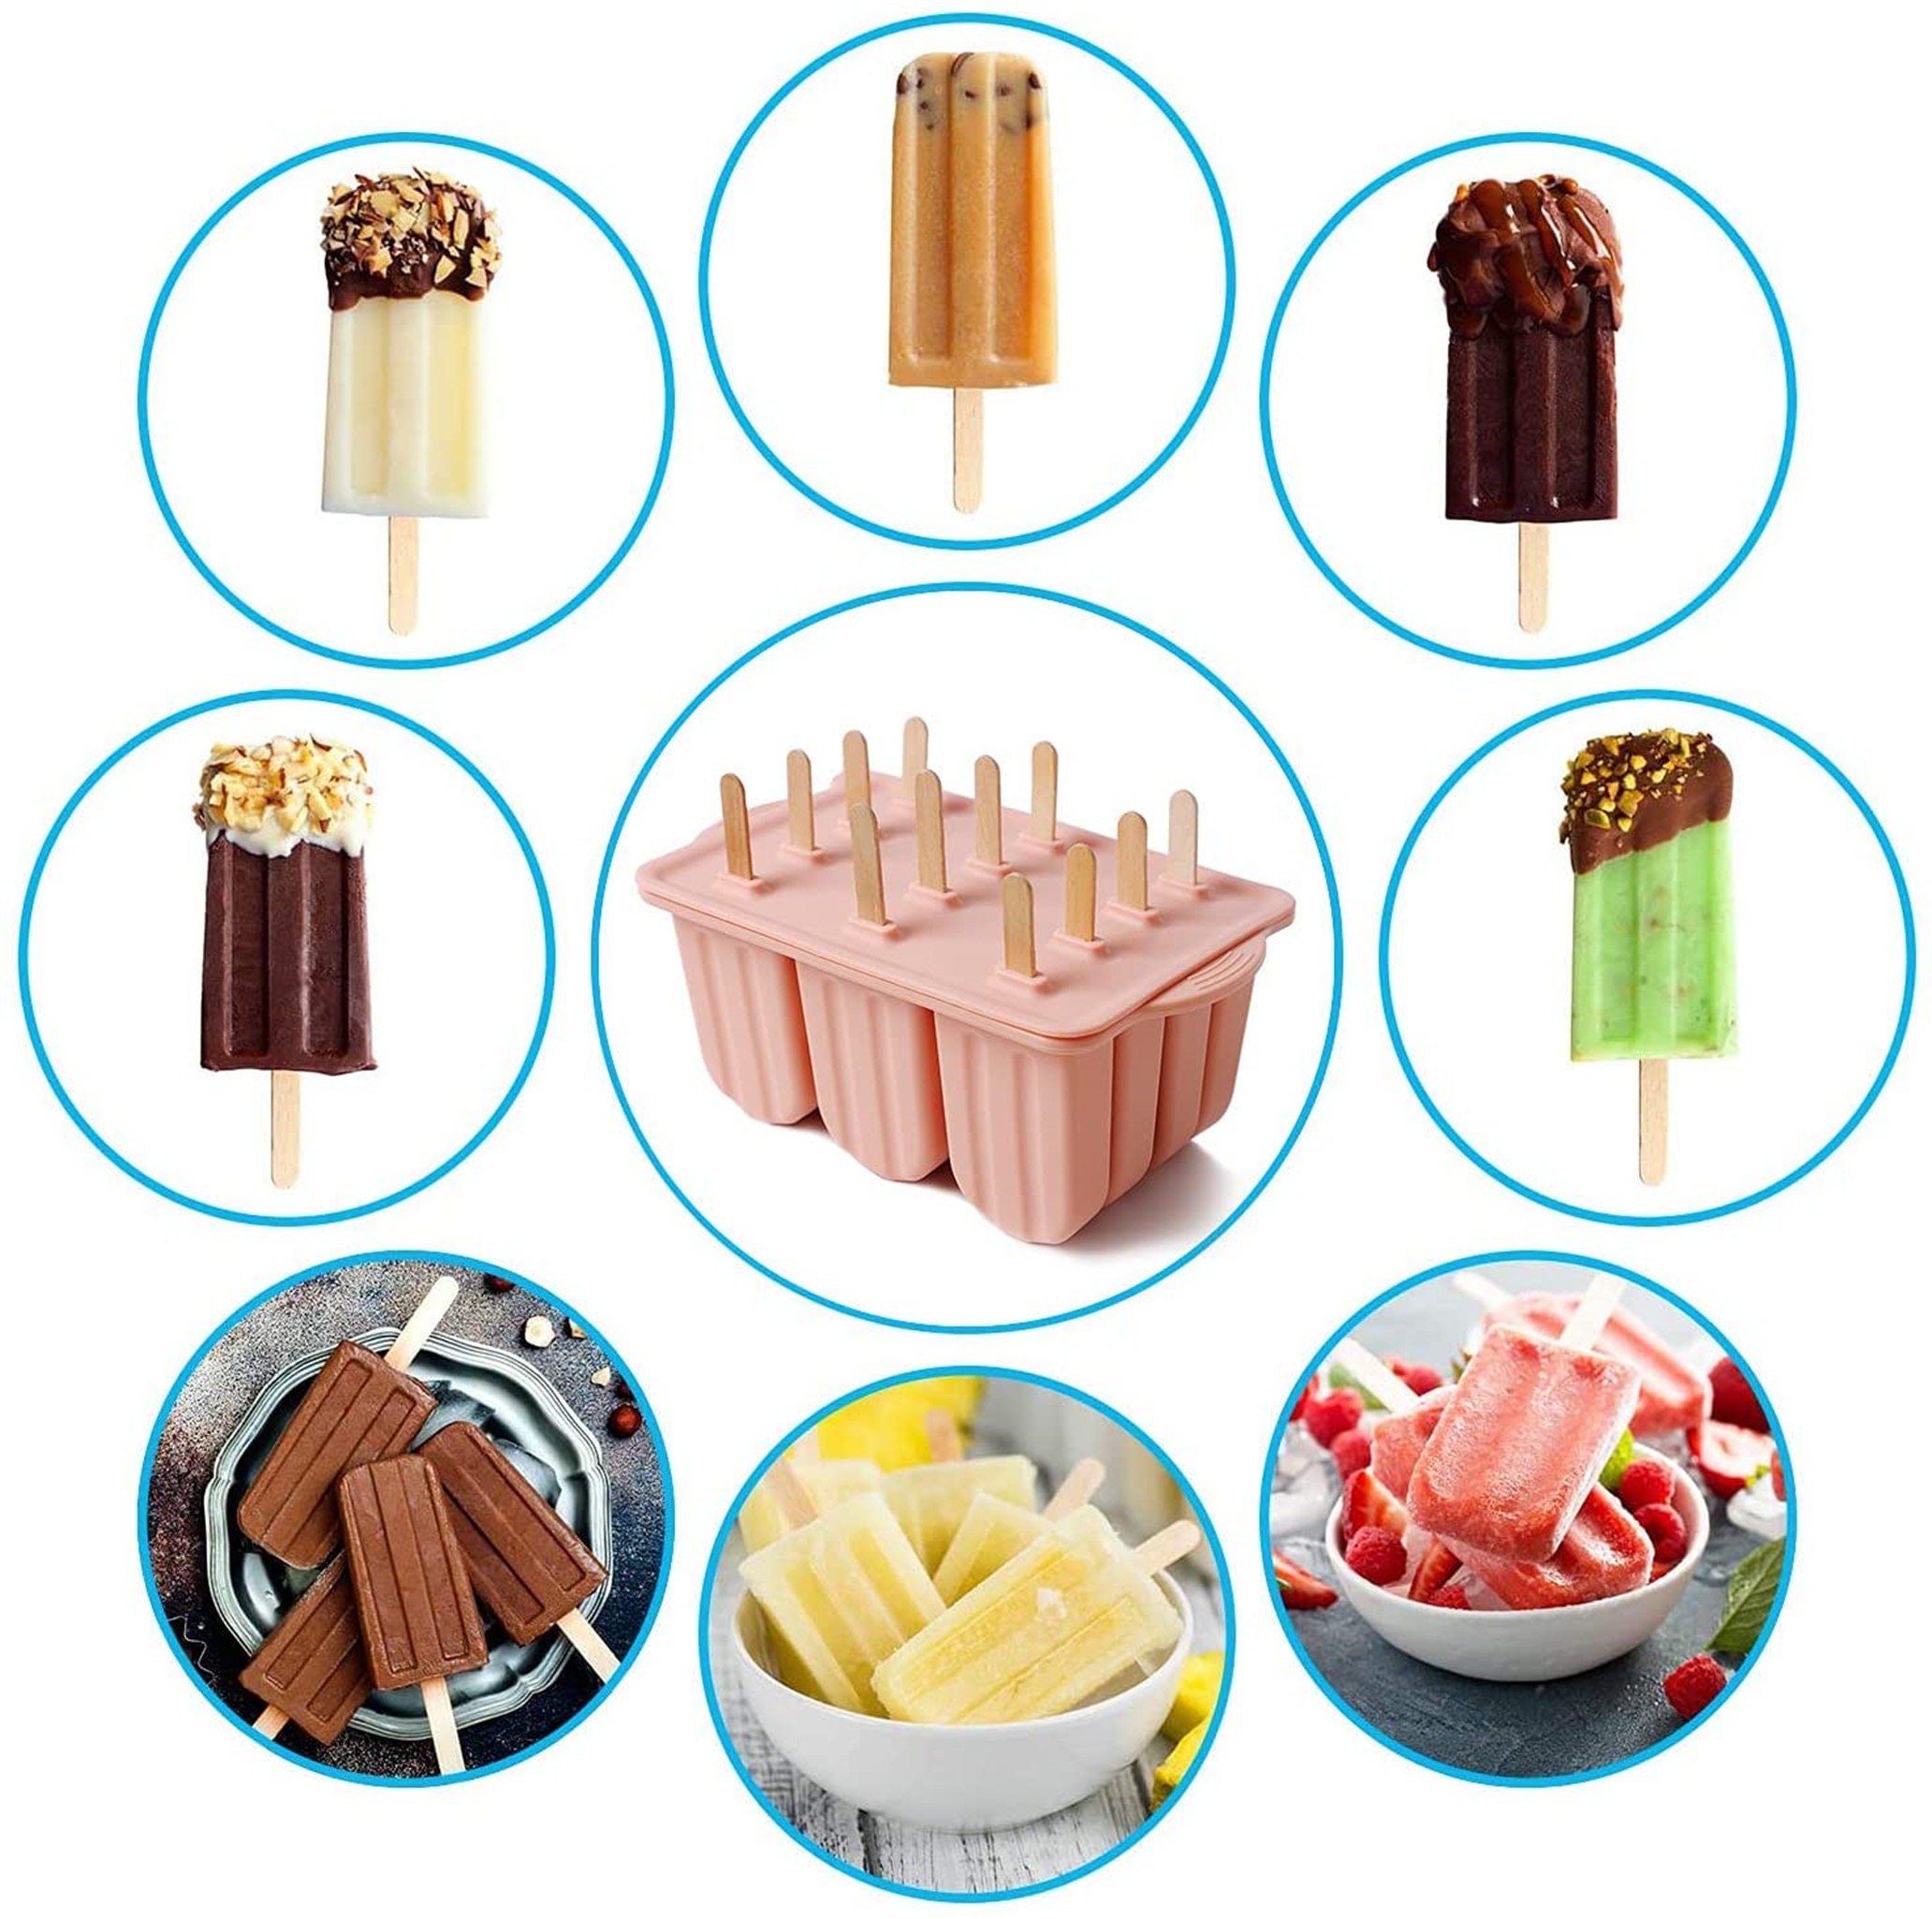  Ice Cream Maker Mold, Ice Cream Stick Holder, Popsicles Maker  Set, Stainless Steel Ice Bar Maker DIY Ice Cream Mold Making Tool for Home  Summer : Everything Else